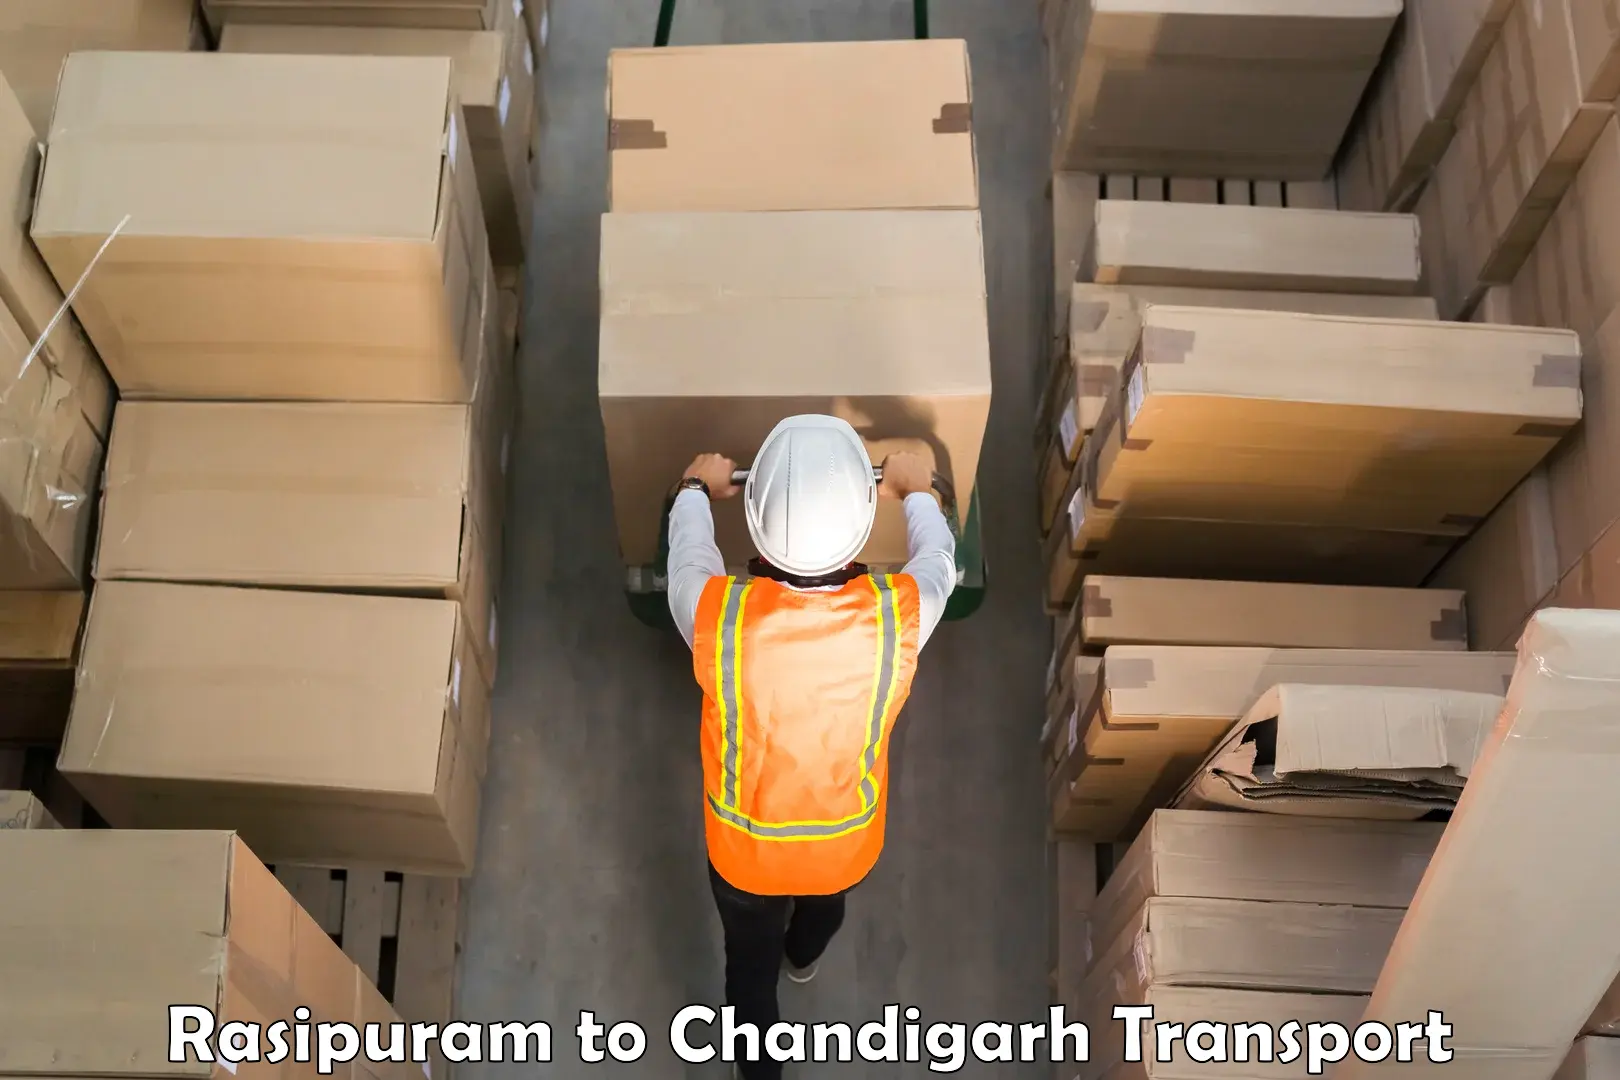 Truck transport companies in India Rasipuram to Chandigarh